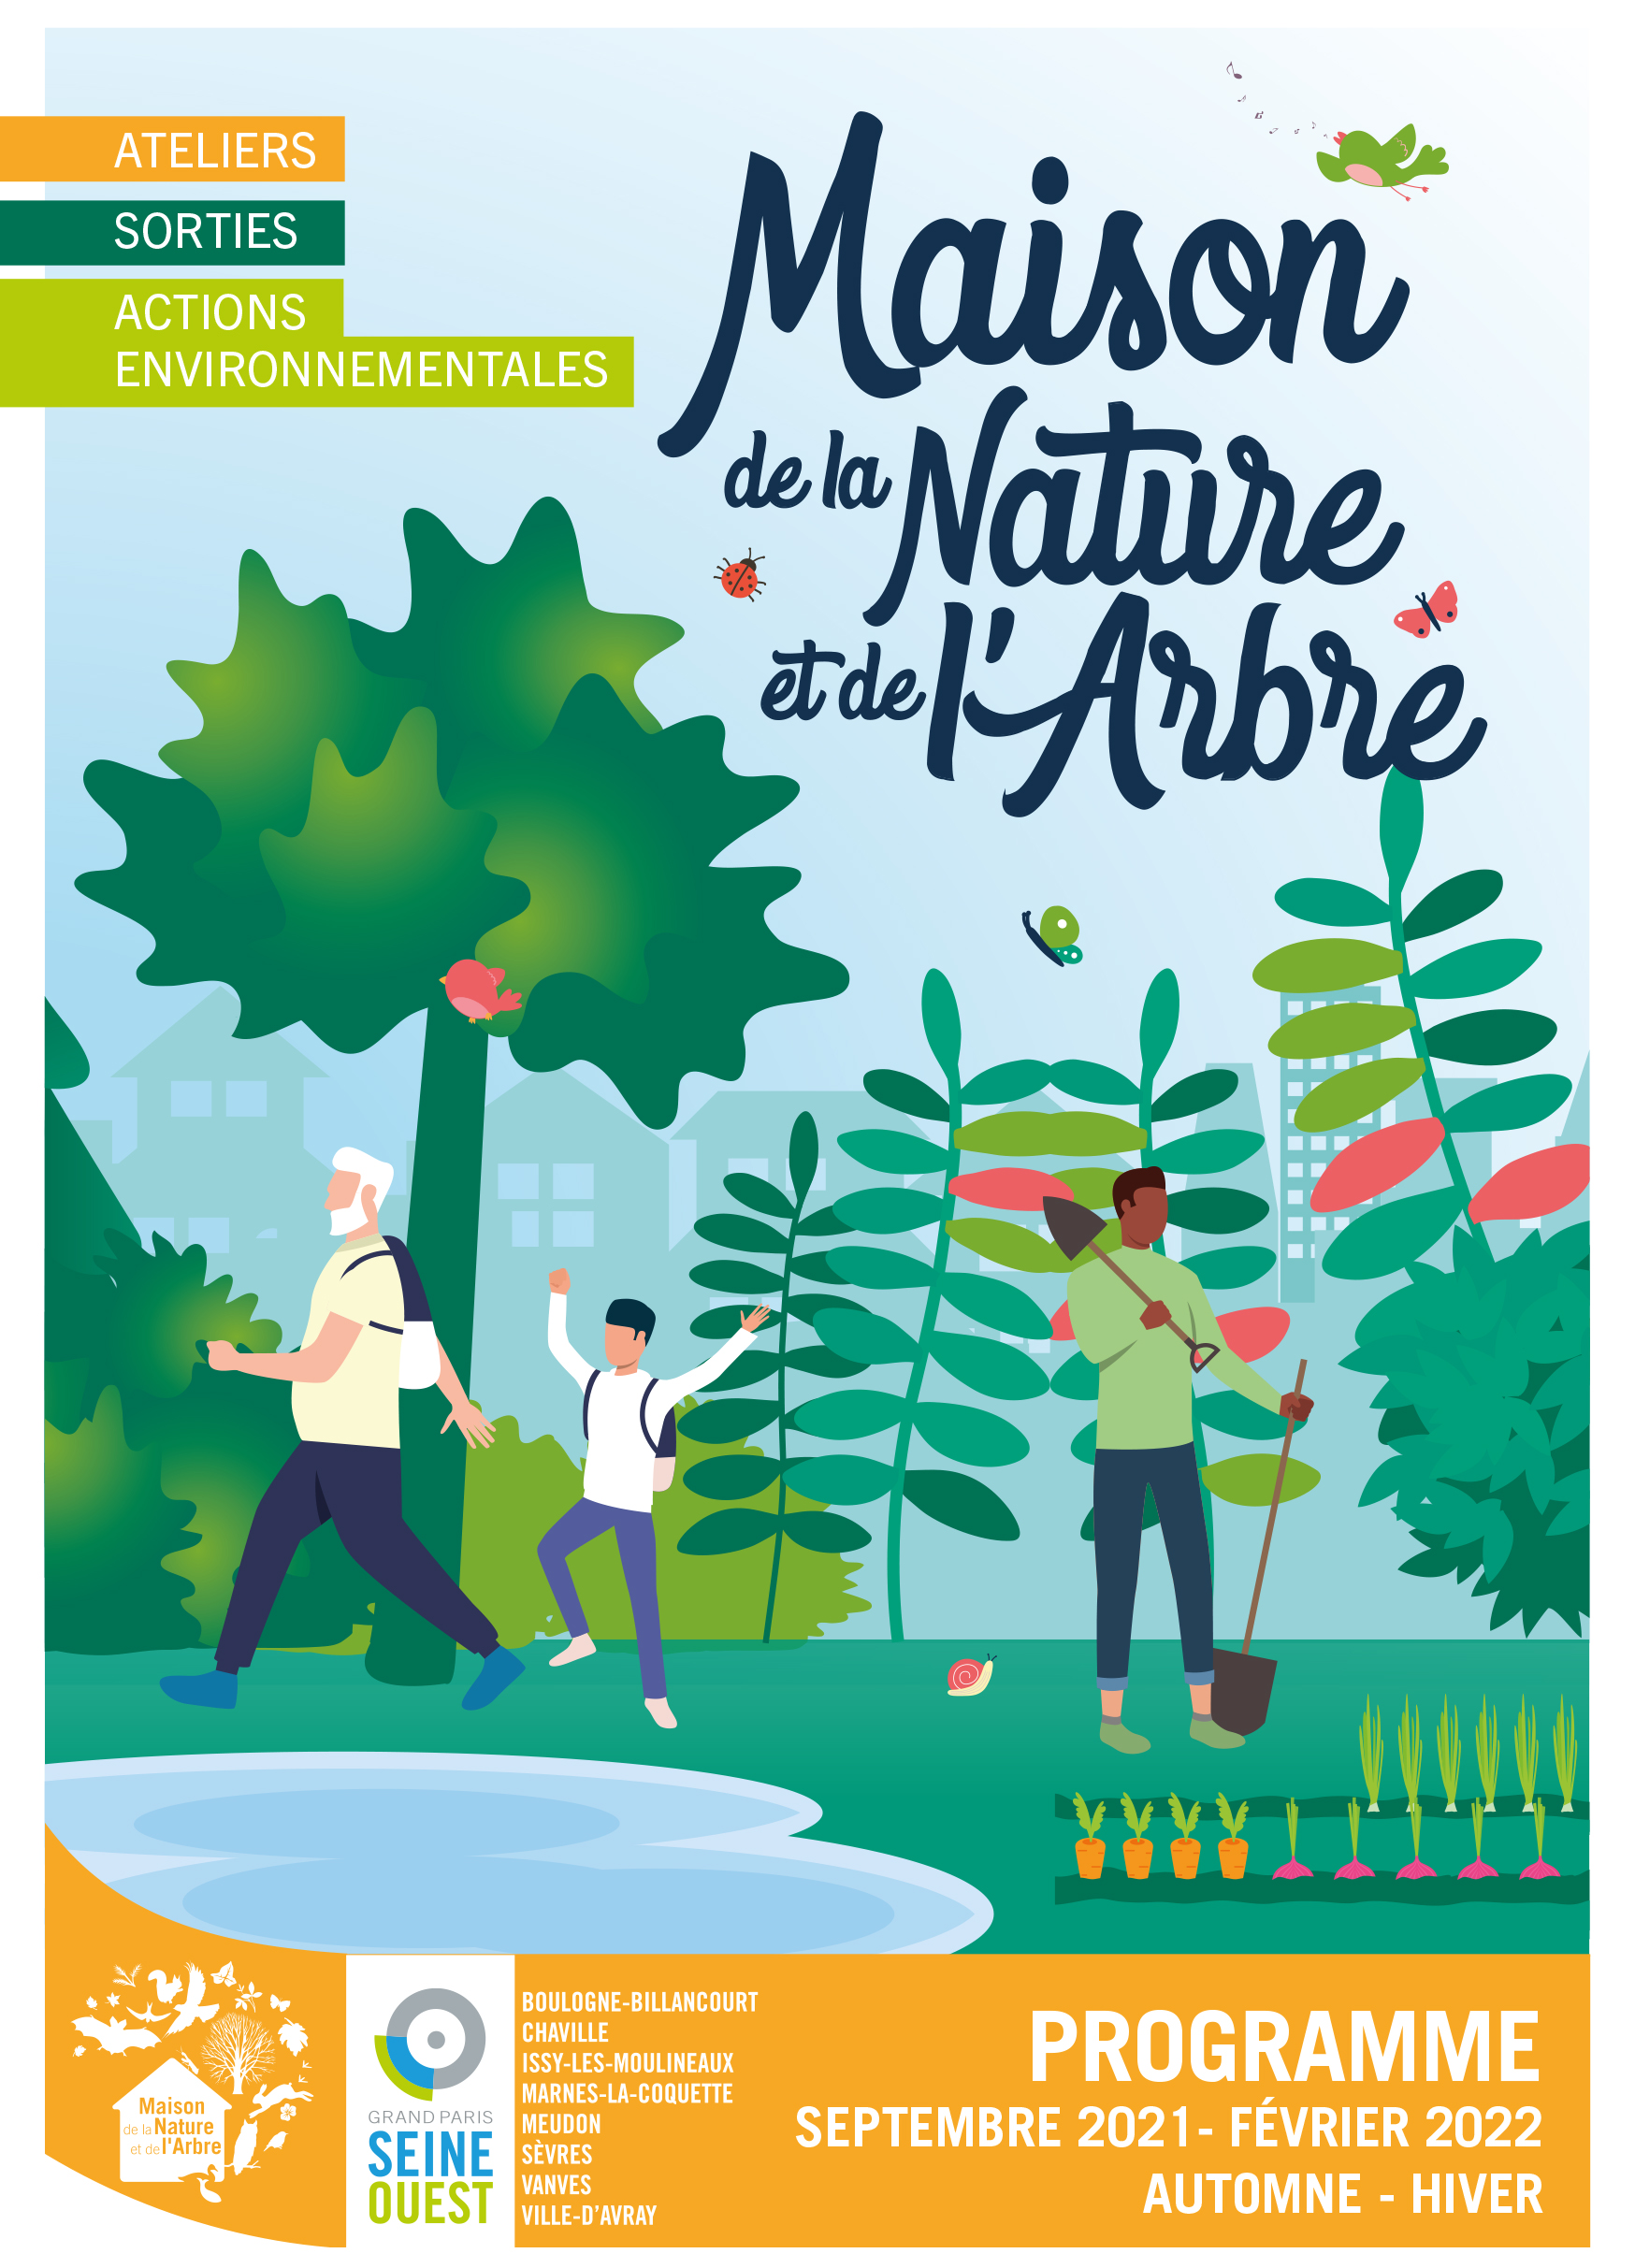 Programme Maison de la nature et de l'arbre (MDNA) de décembre 2021 à février 2022